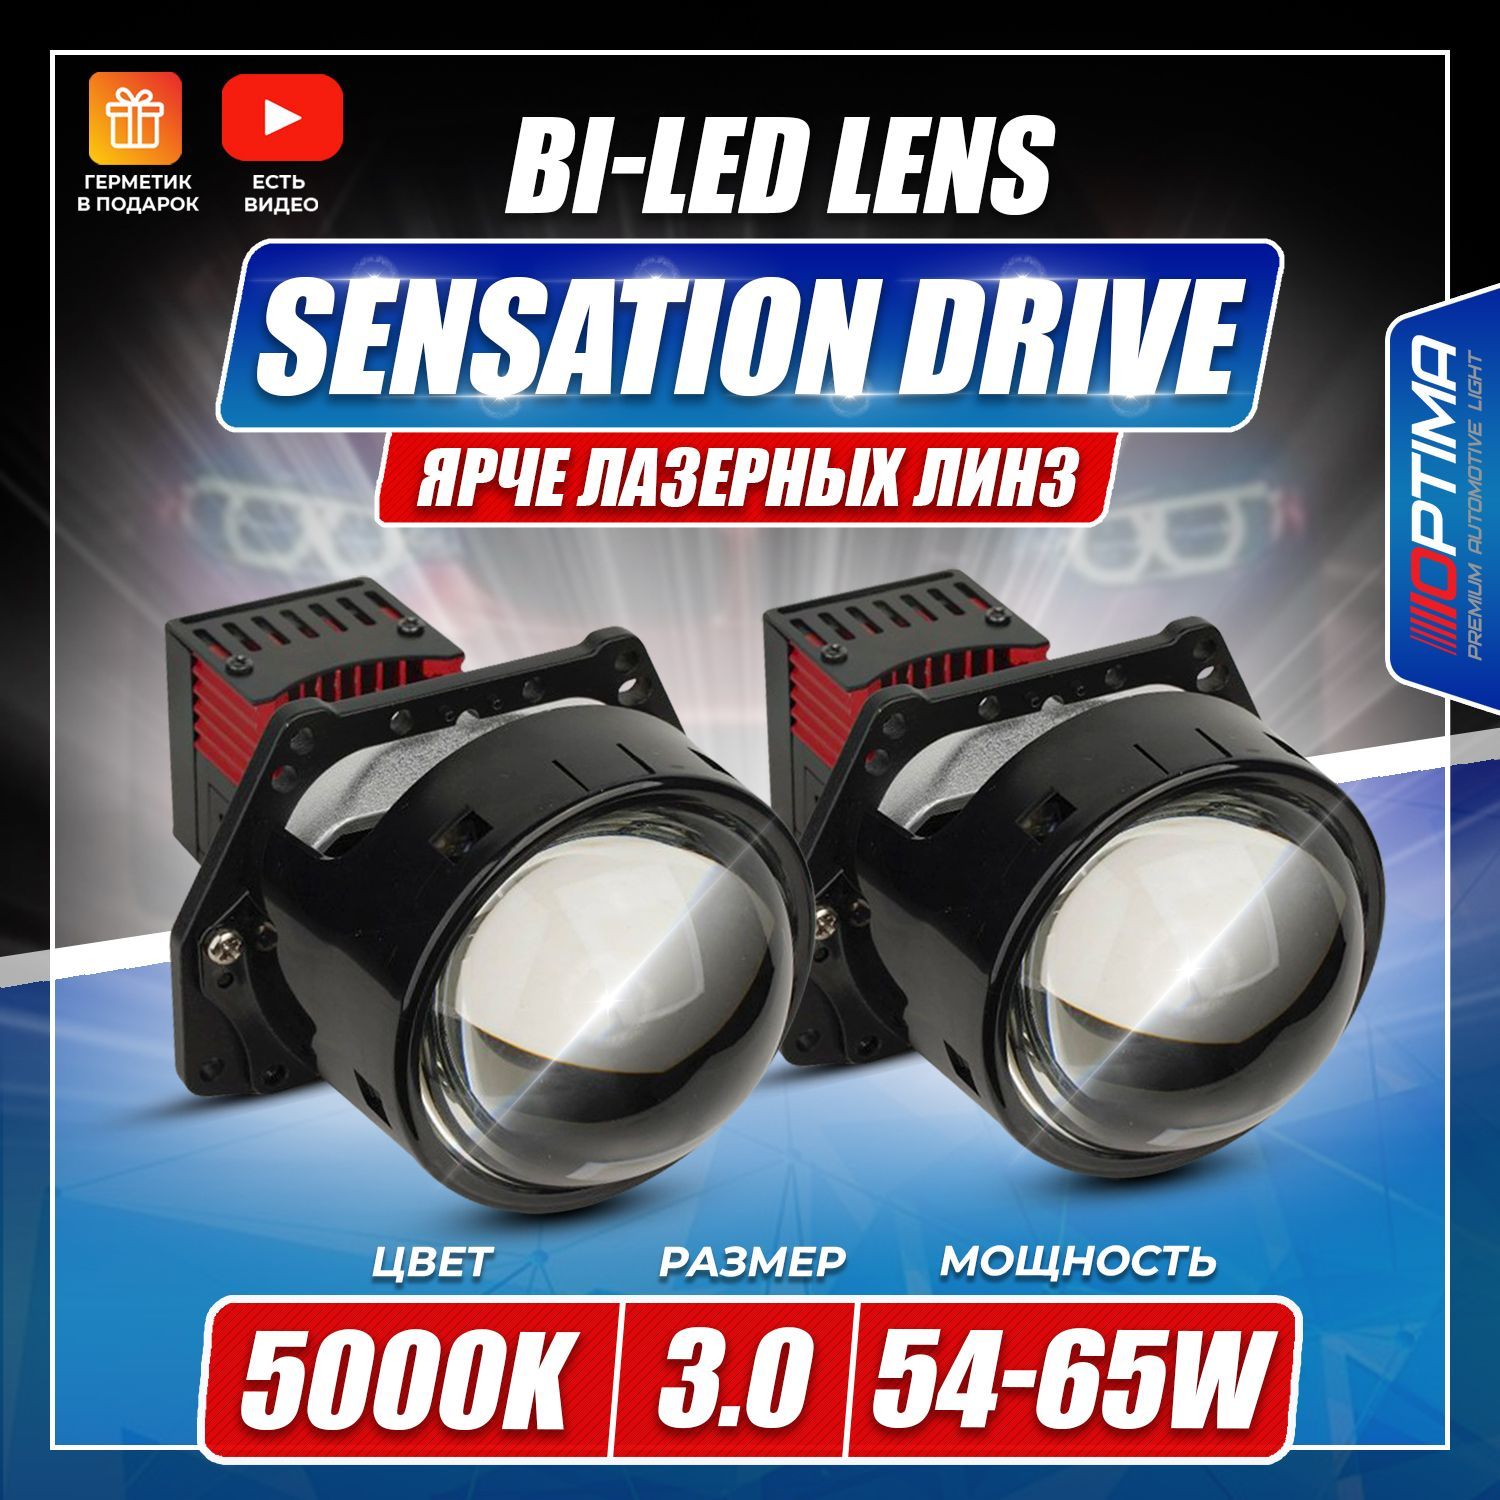 Optima sensation drive. Optima Sensation Drive 3.0. Led линзы Sensation Drive. Светодиодная линза Optima Premium bi-led Lens Sensation Drive 3.0" в мазду. Линзы Оптима для авто компитизон.